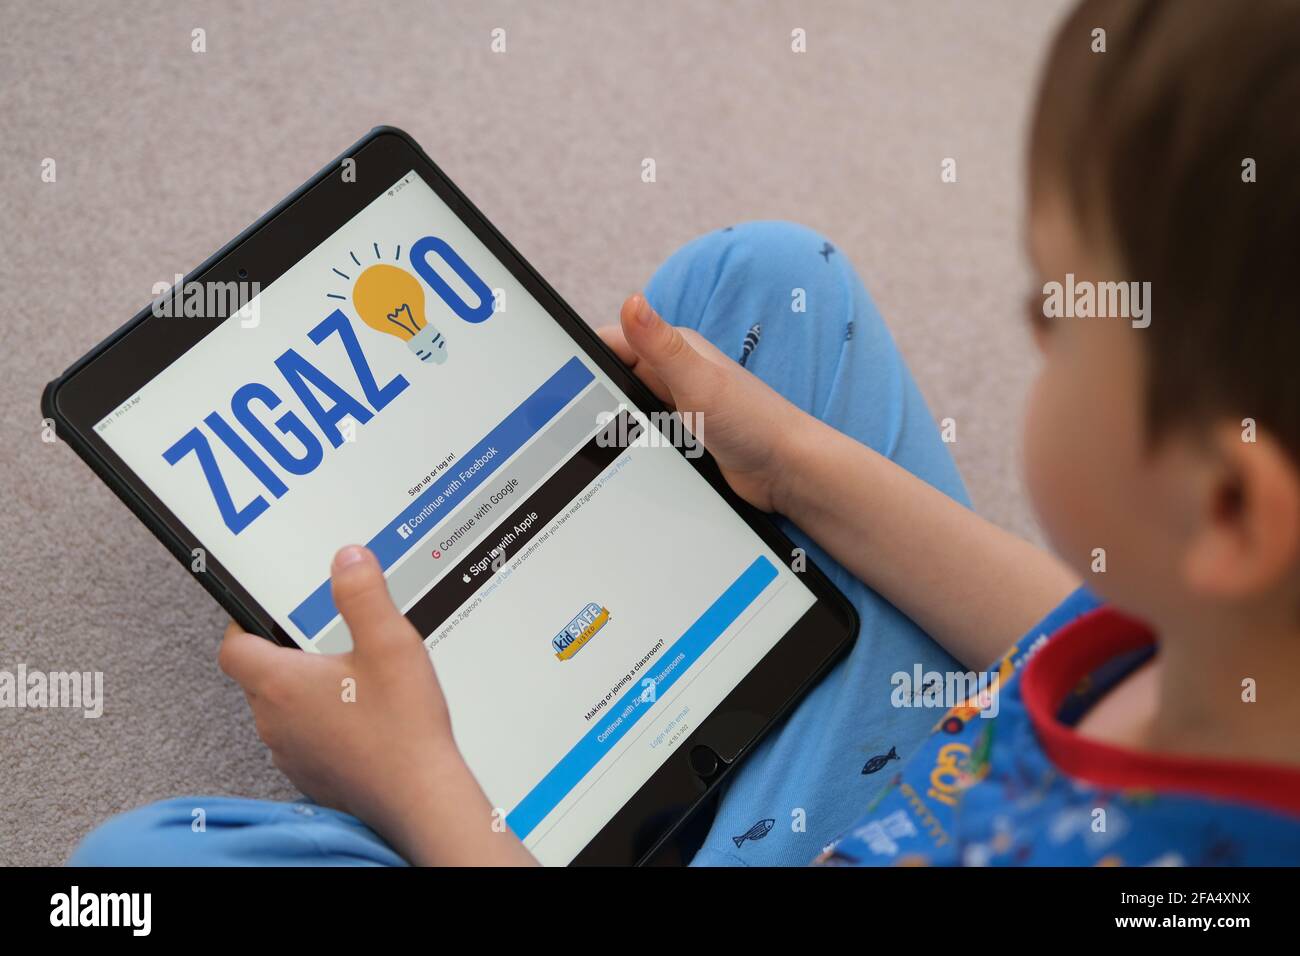 Pantalla de inicio de sesión del sitio web de la aplicación Zigazoo vista en  ipad que está en manos de un niño pequeño. La nueva aplicación es una  plataforma segura para los